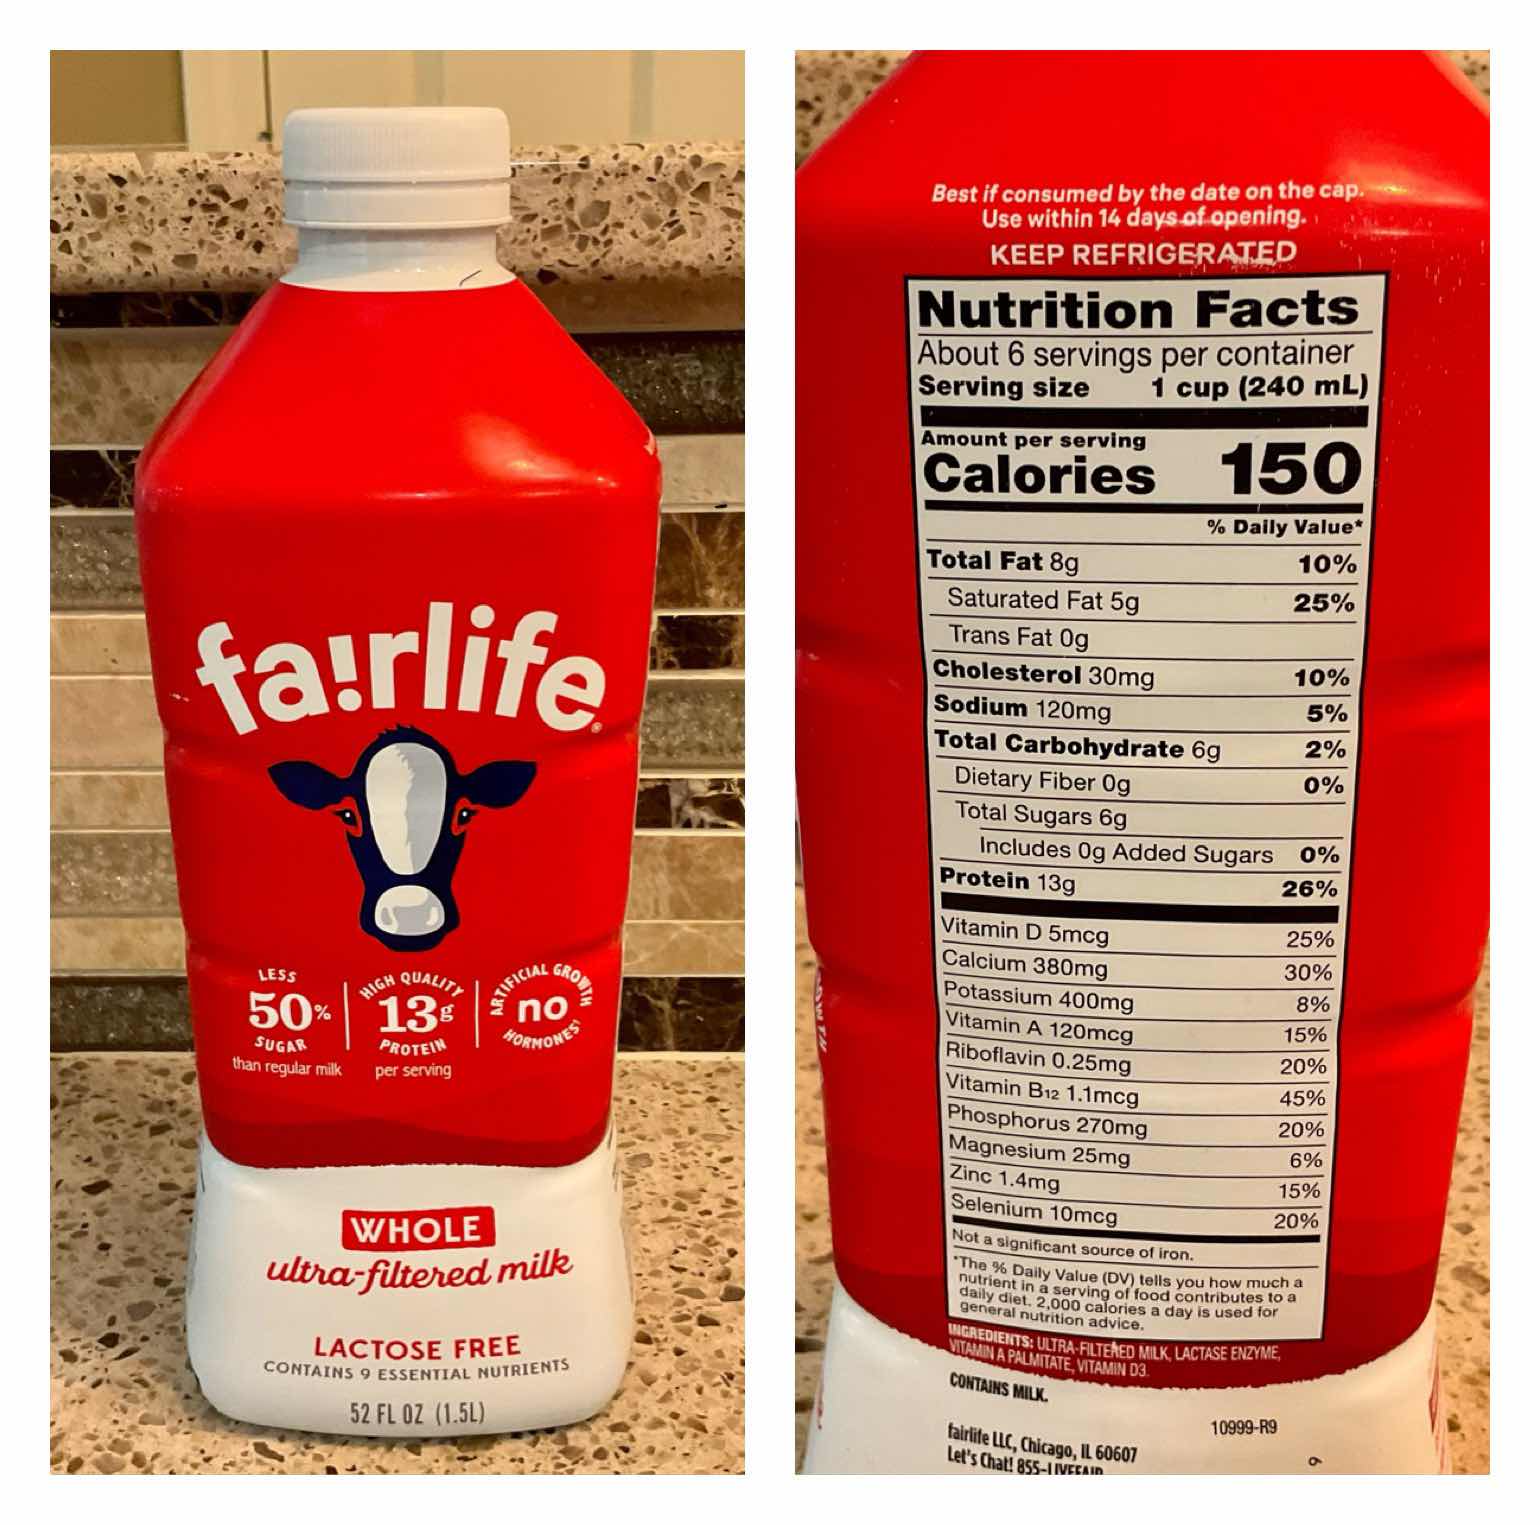 Fairlife Milk has less sugar